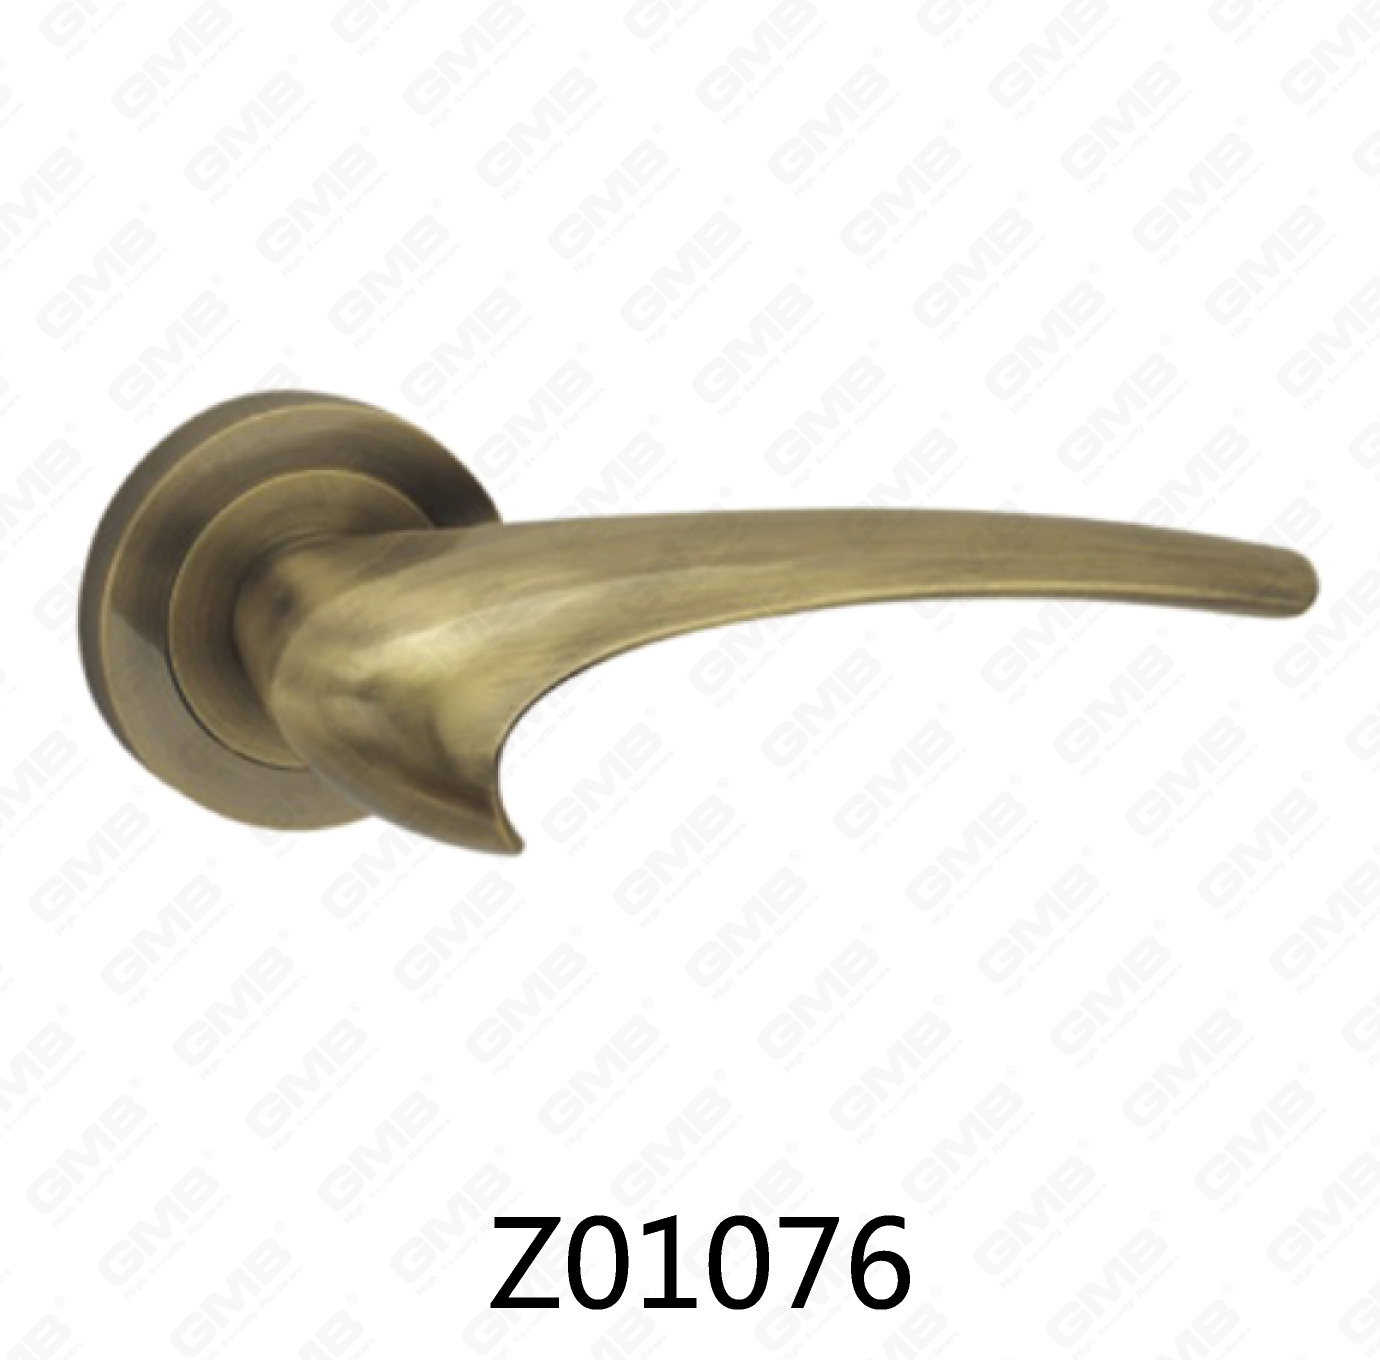 ידית דלת רוזטת אלומיניום מסגסוגת אבץ של Zamak עם רוזטה עגולה (Z01076)